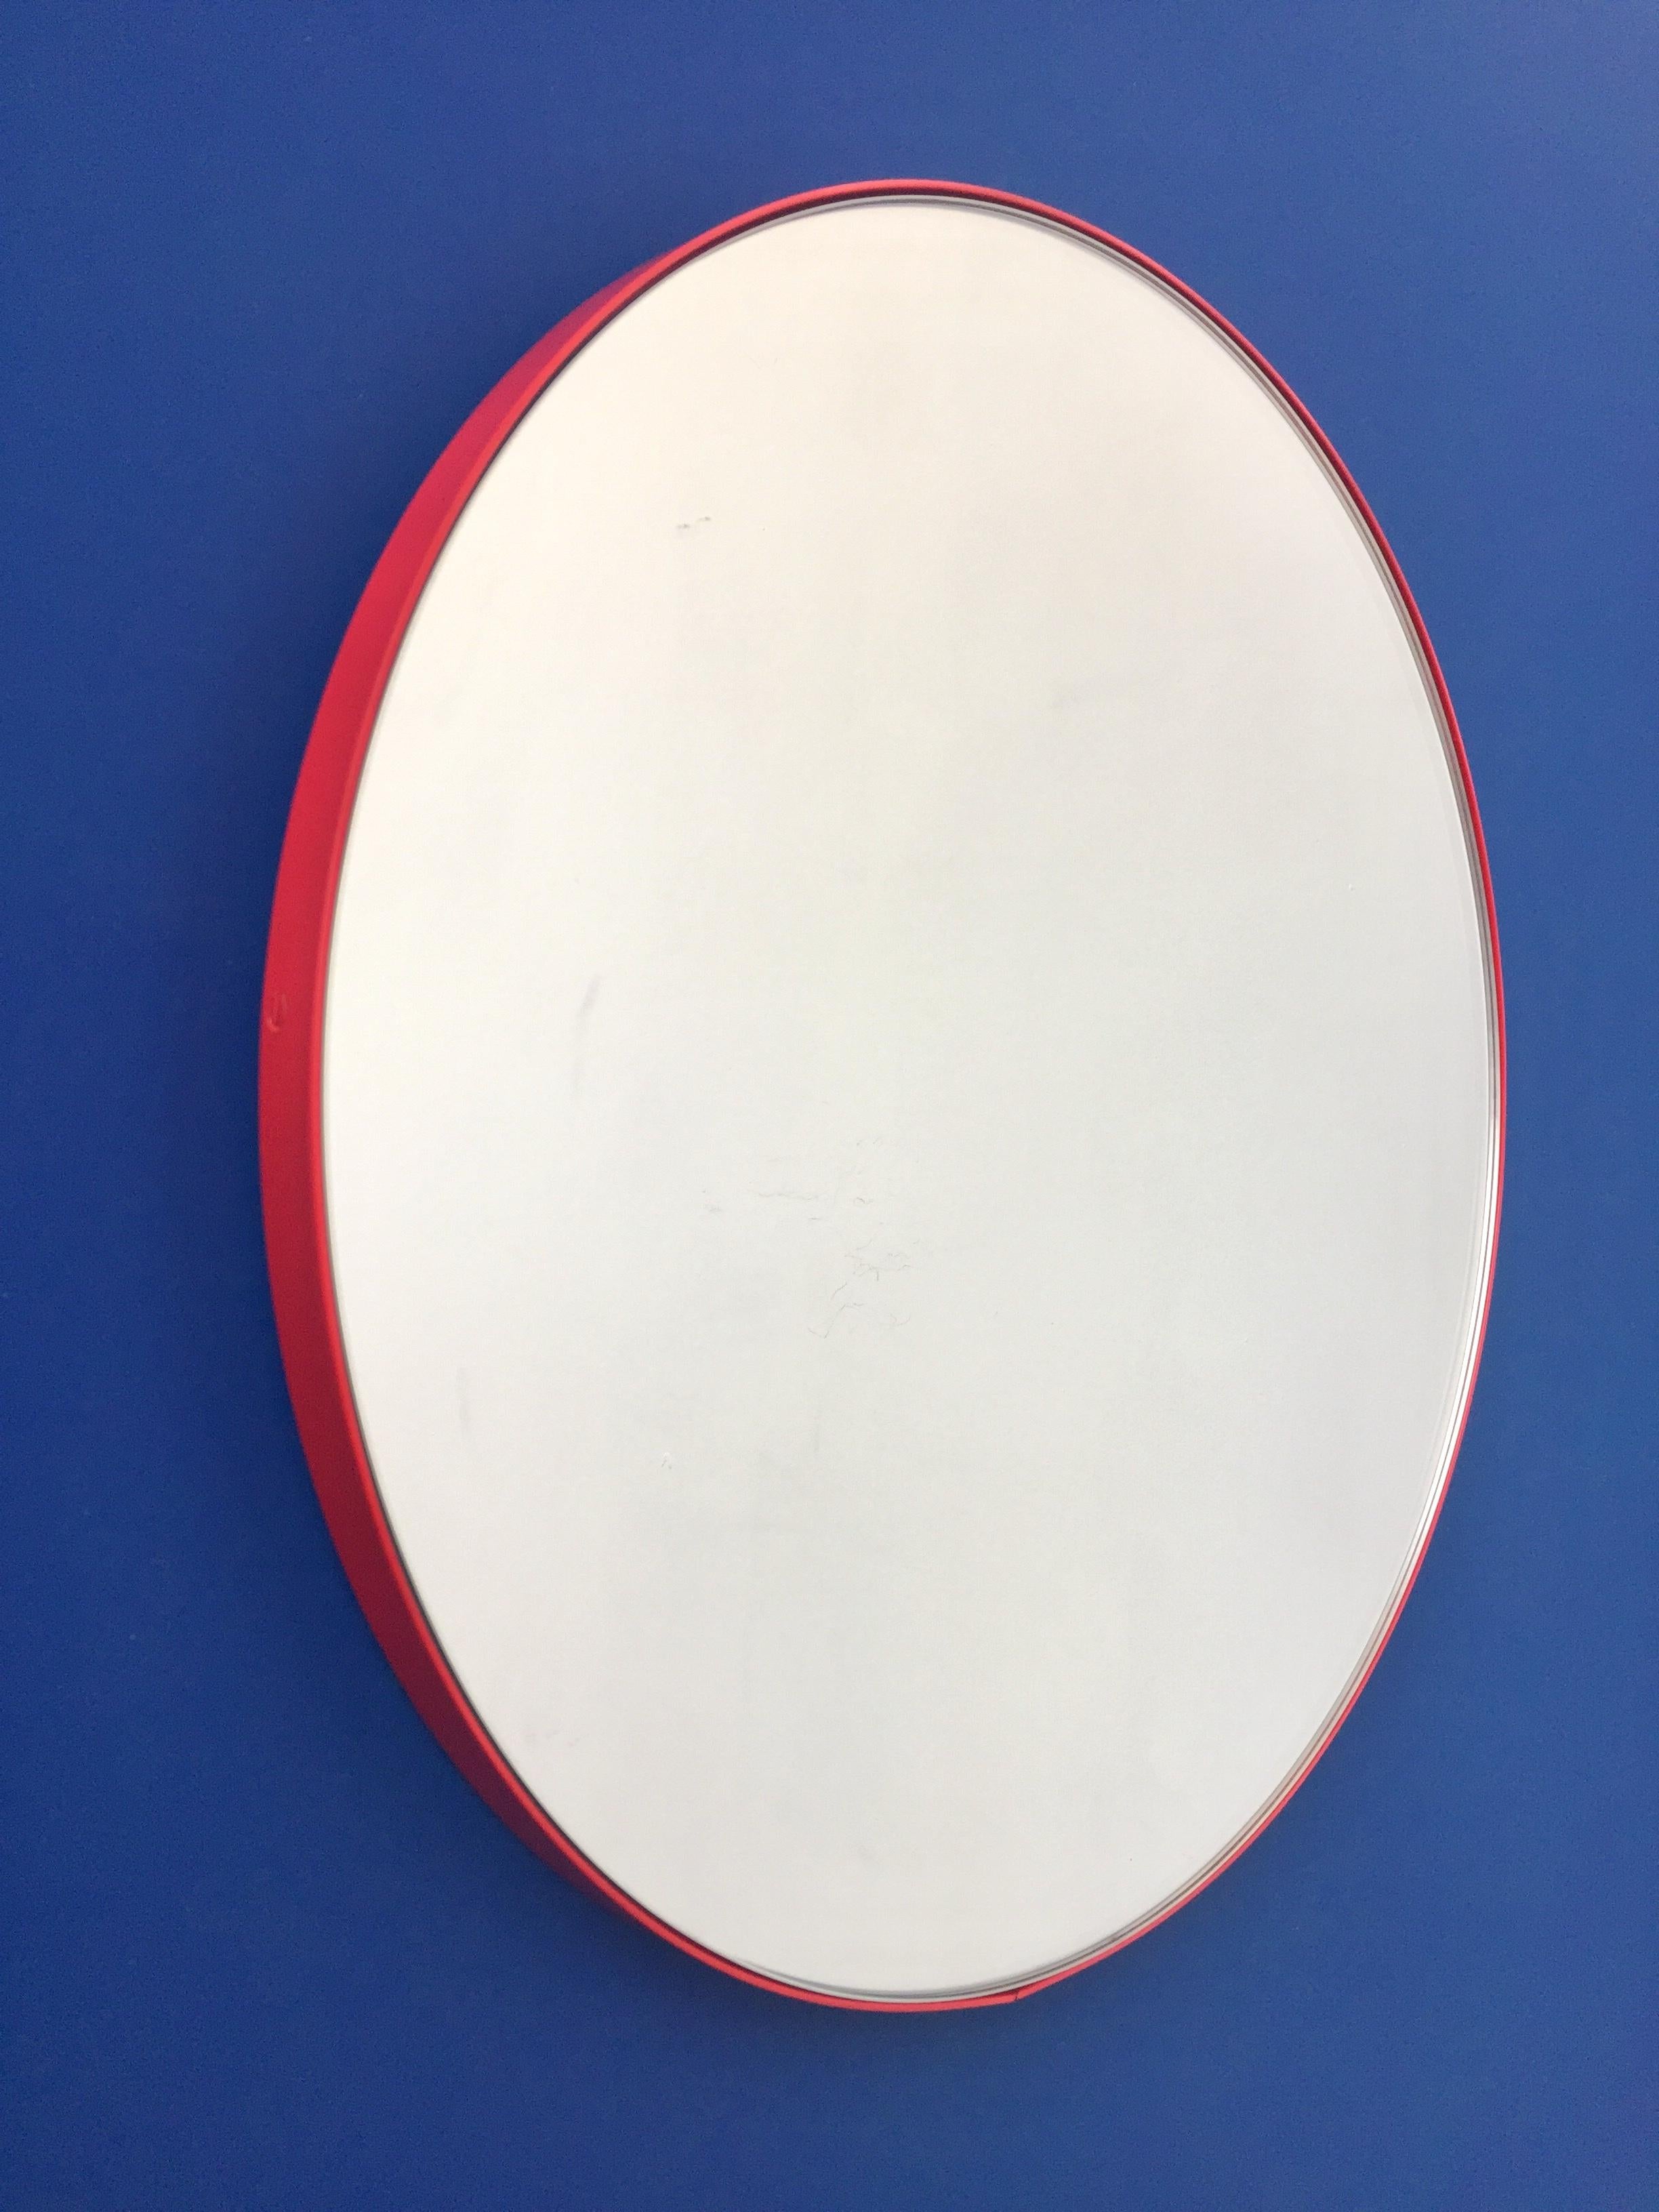 red round mirror